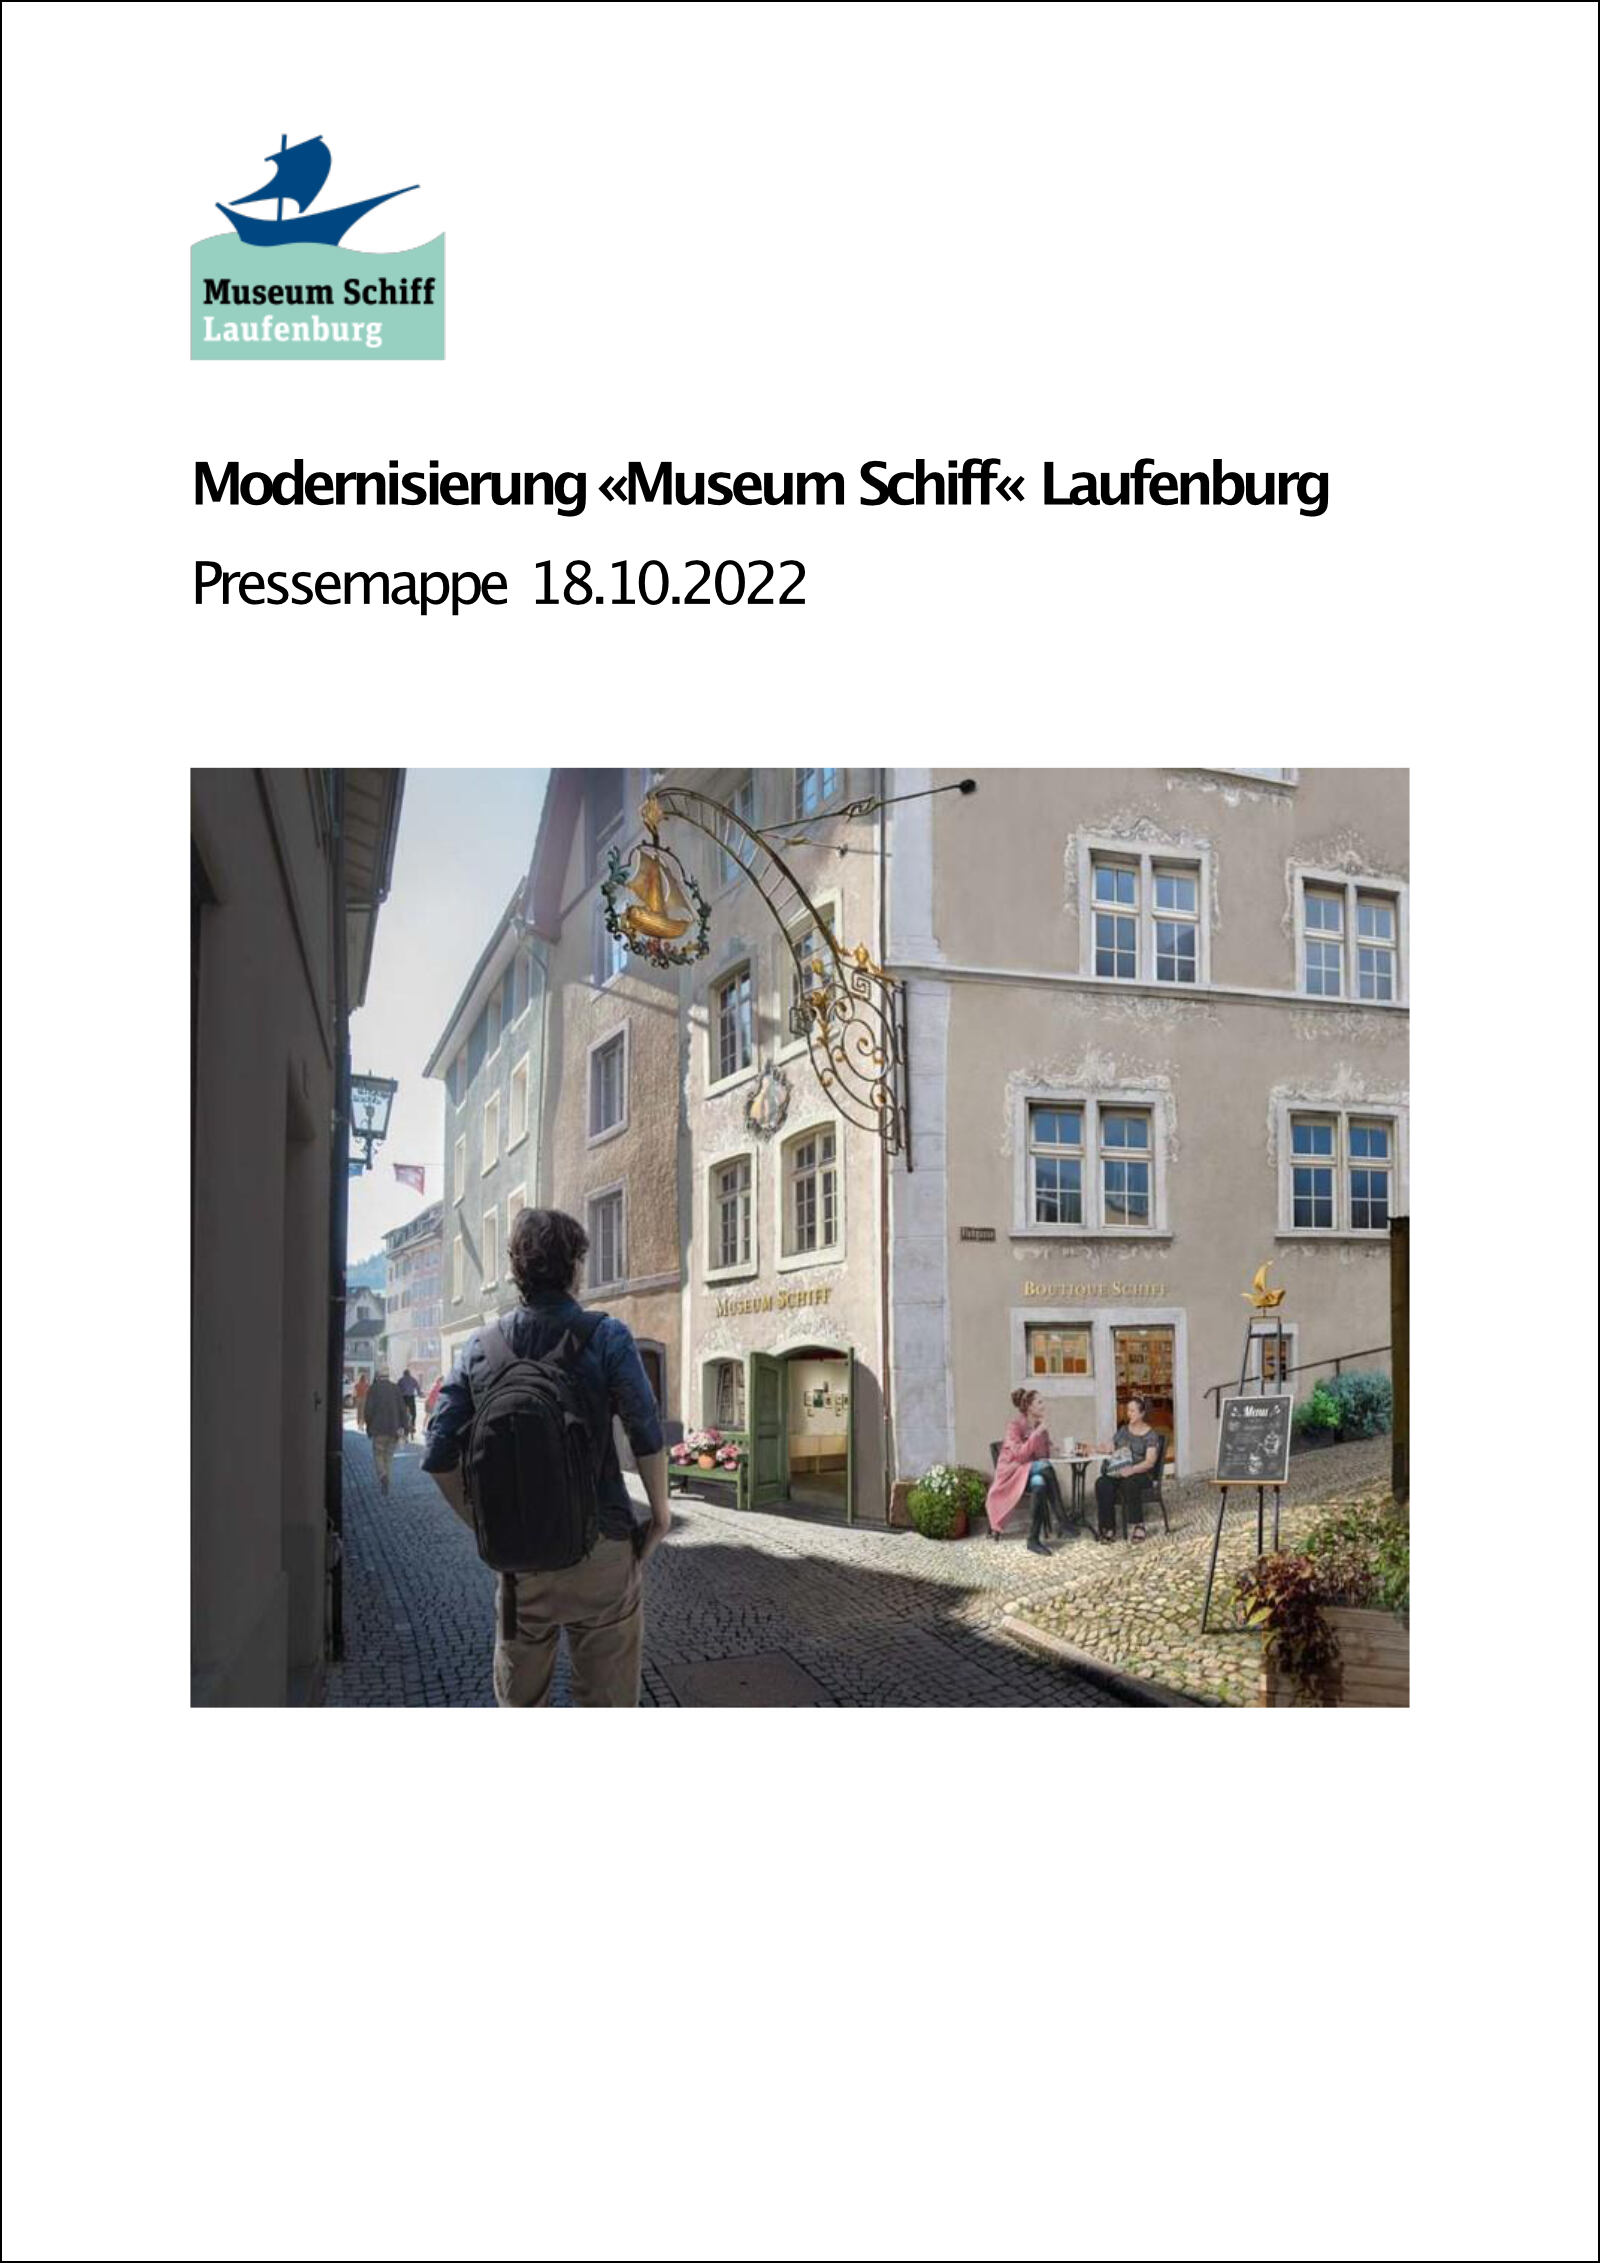 MuseumSchiffMedieninfo